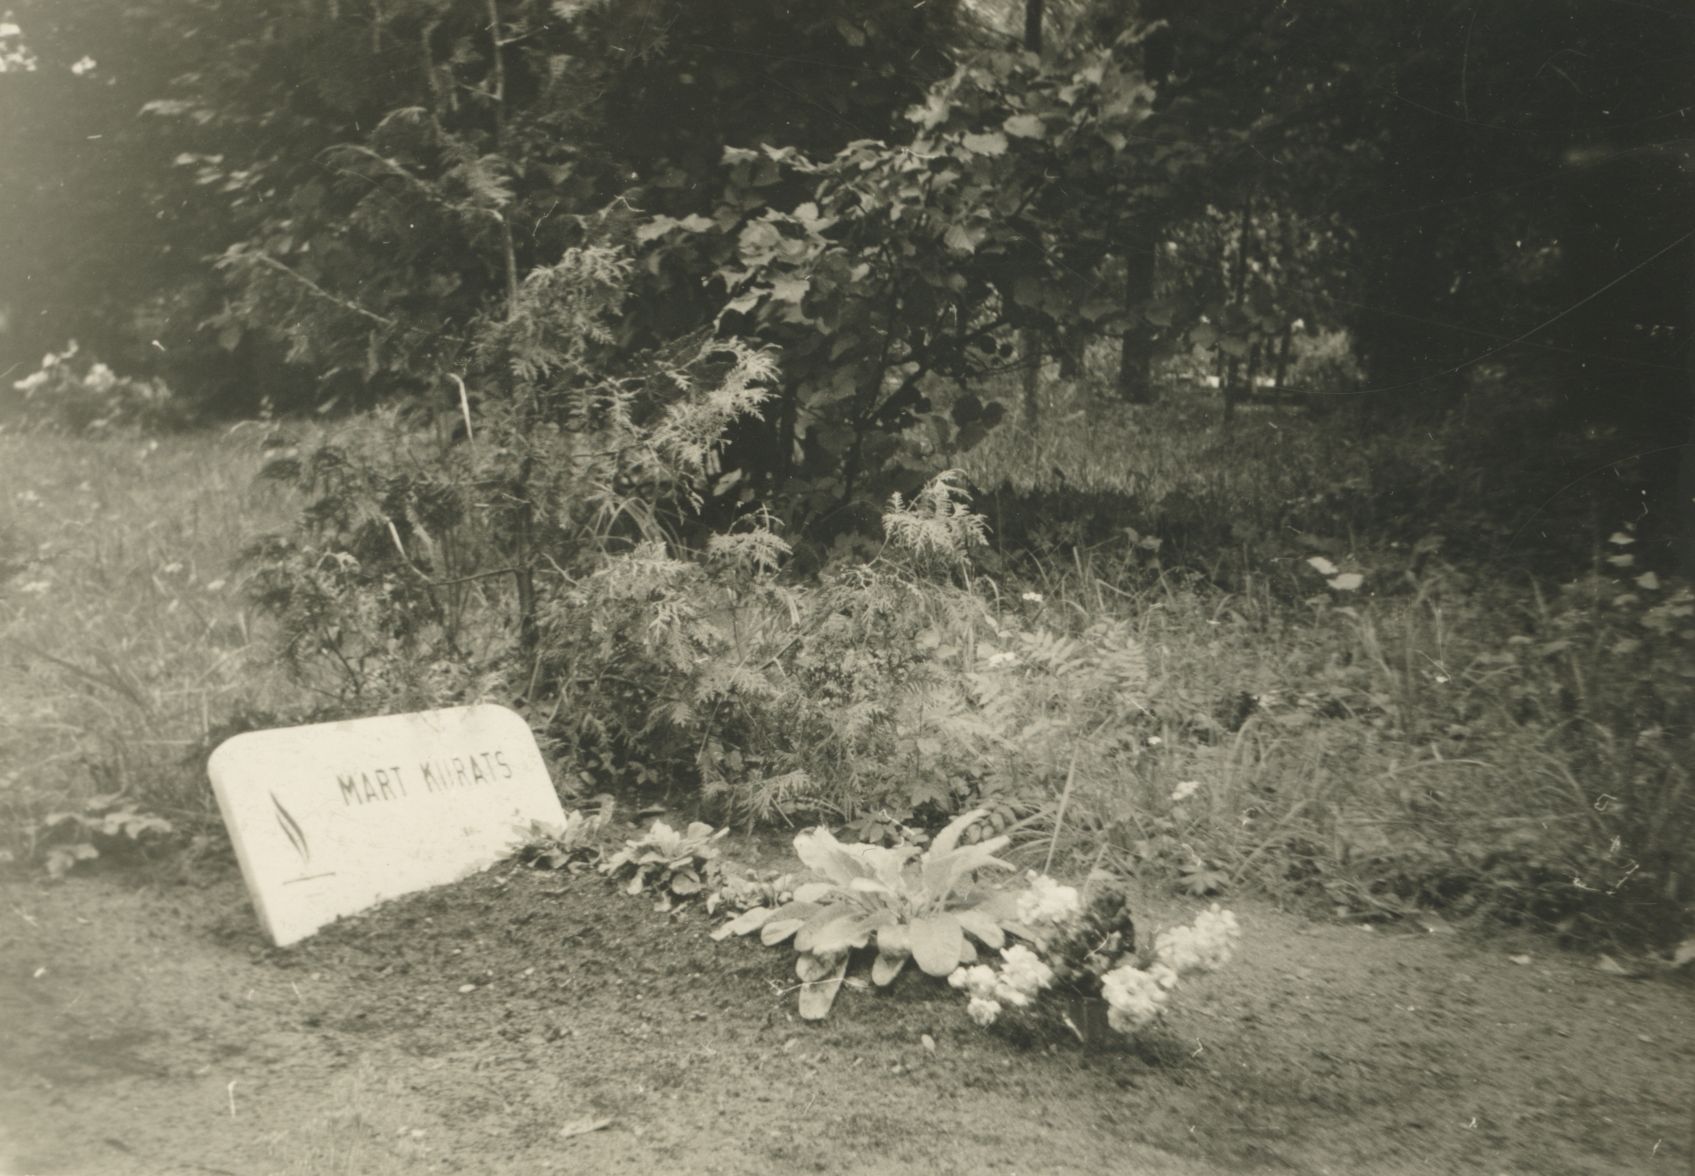 Mart Kiirats' grave on Vändra's cemetery